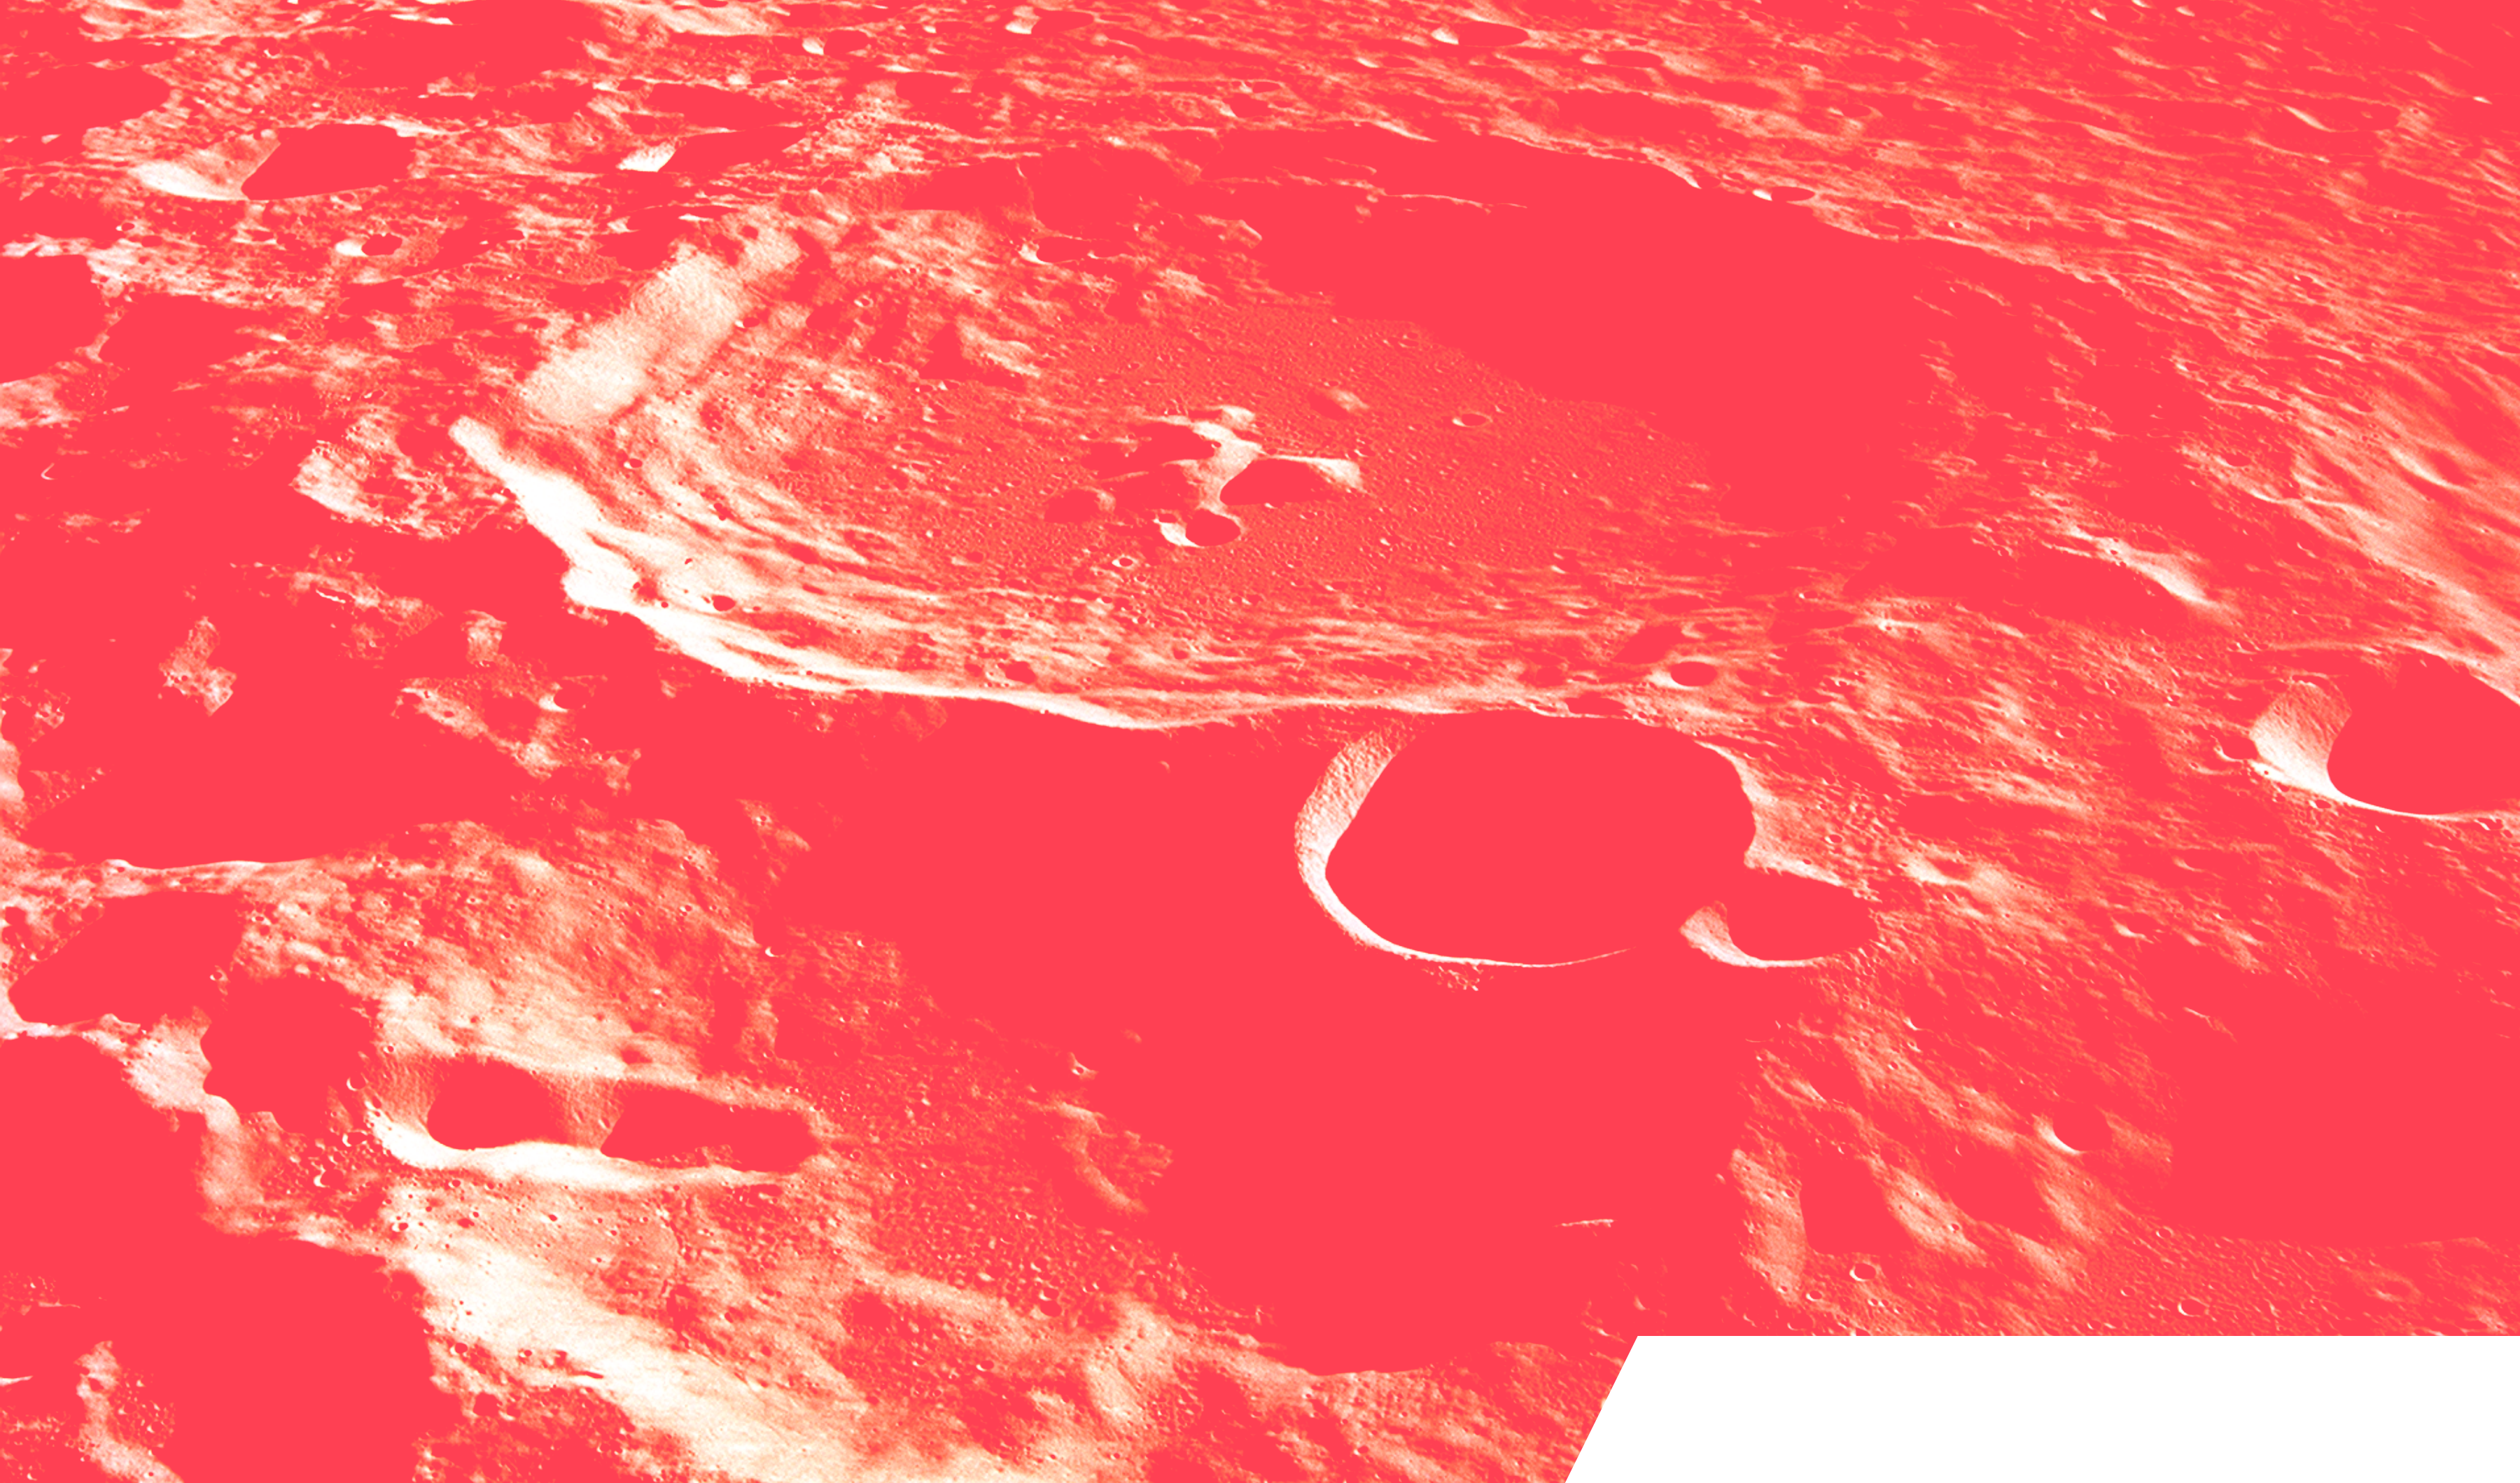 cratère lunaire